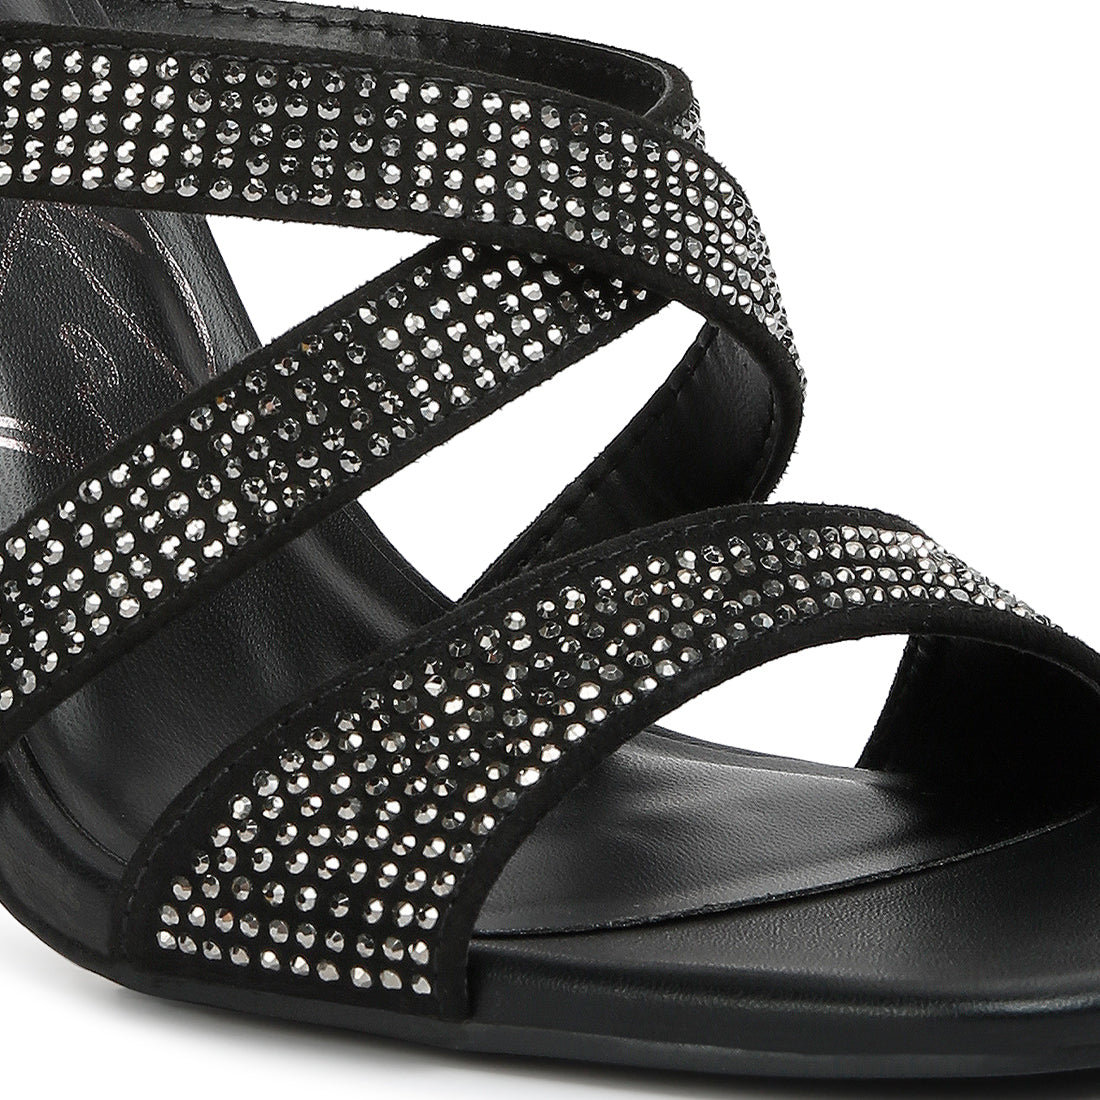 wapit rhinestone embellished straps sandals#color_black